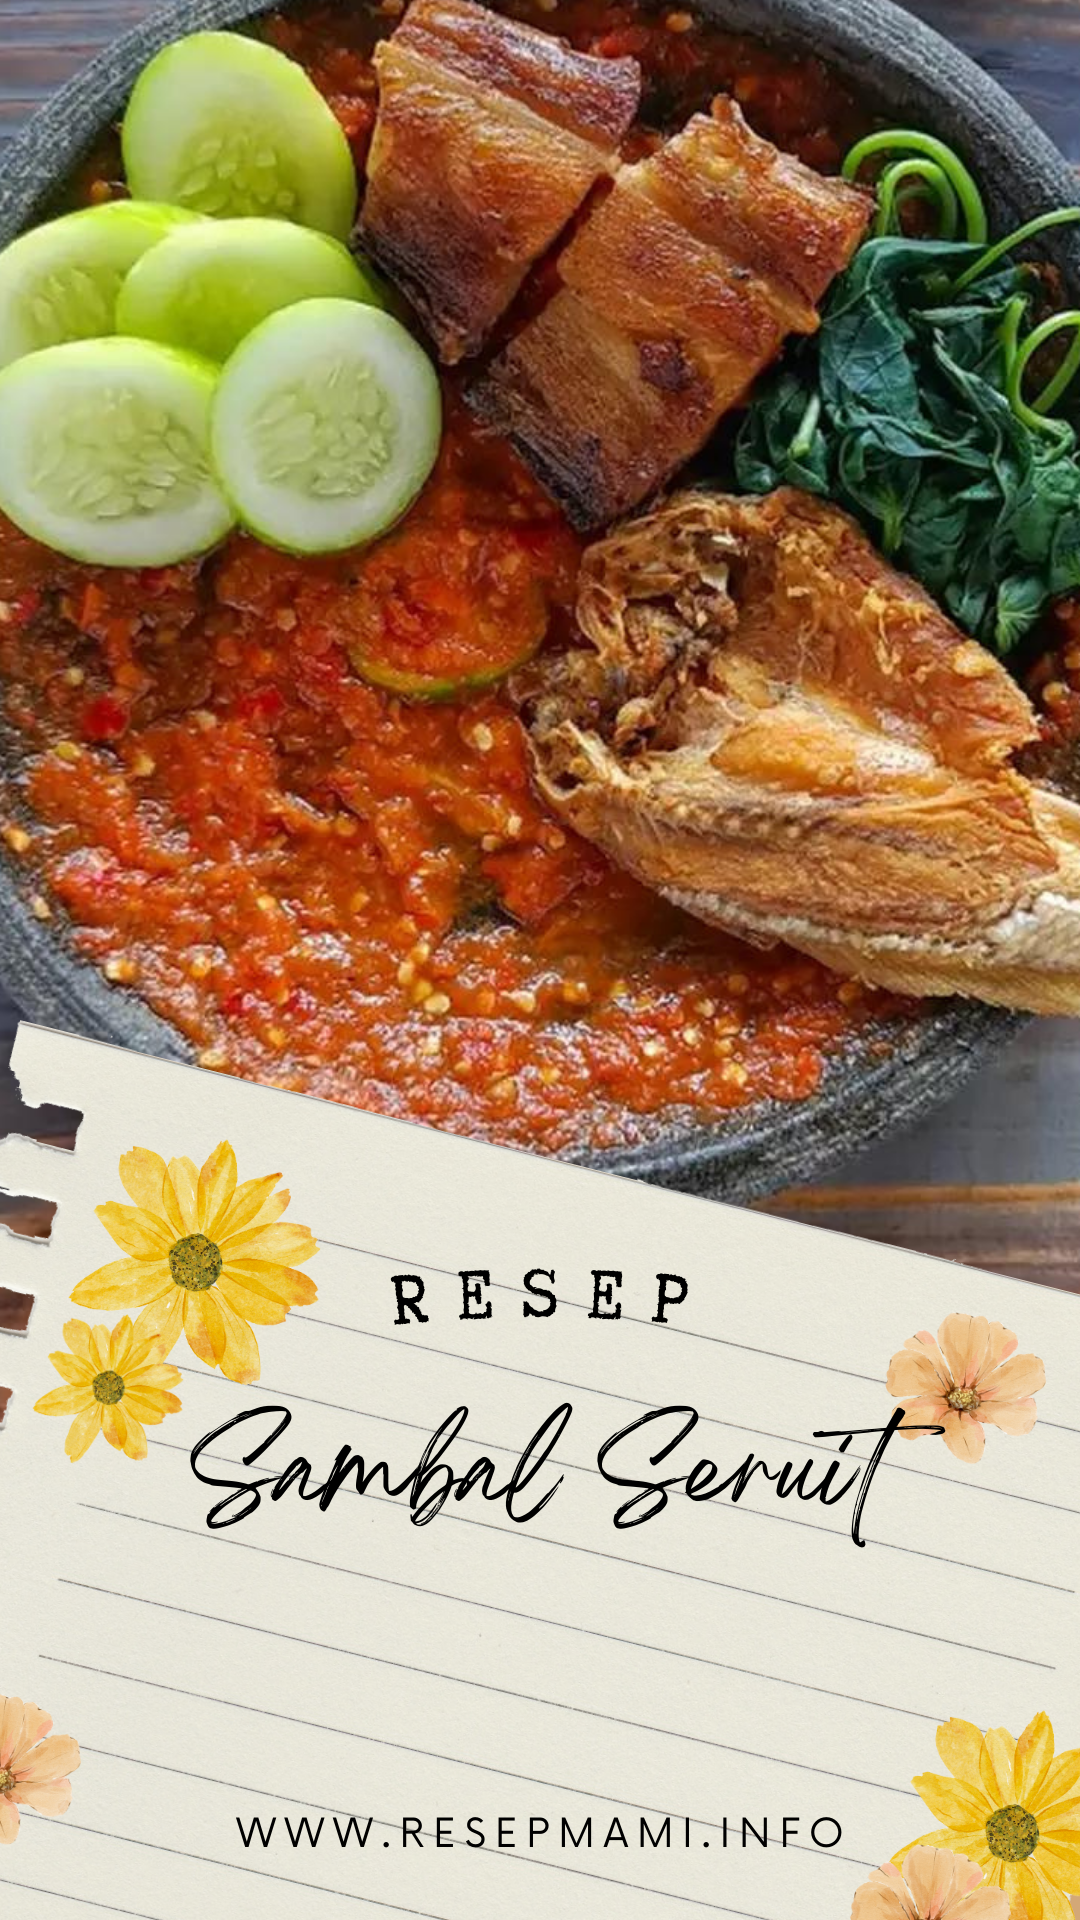 Resep sambal seruit
